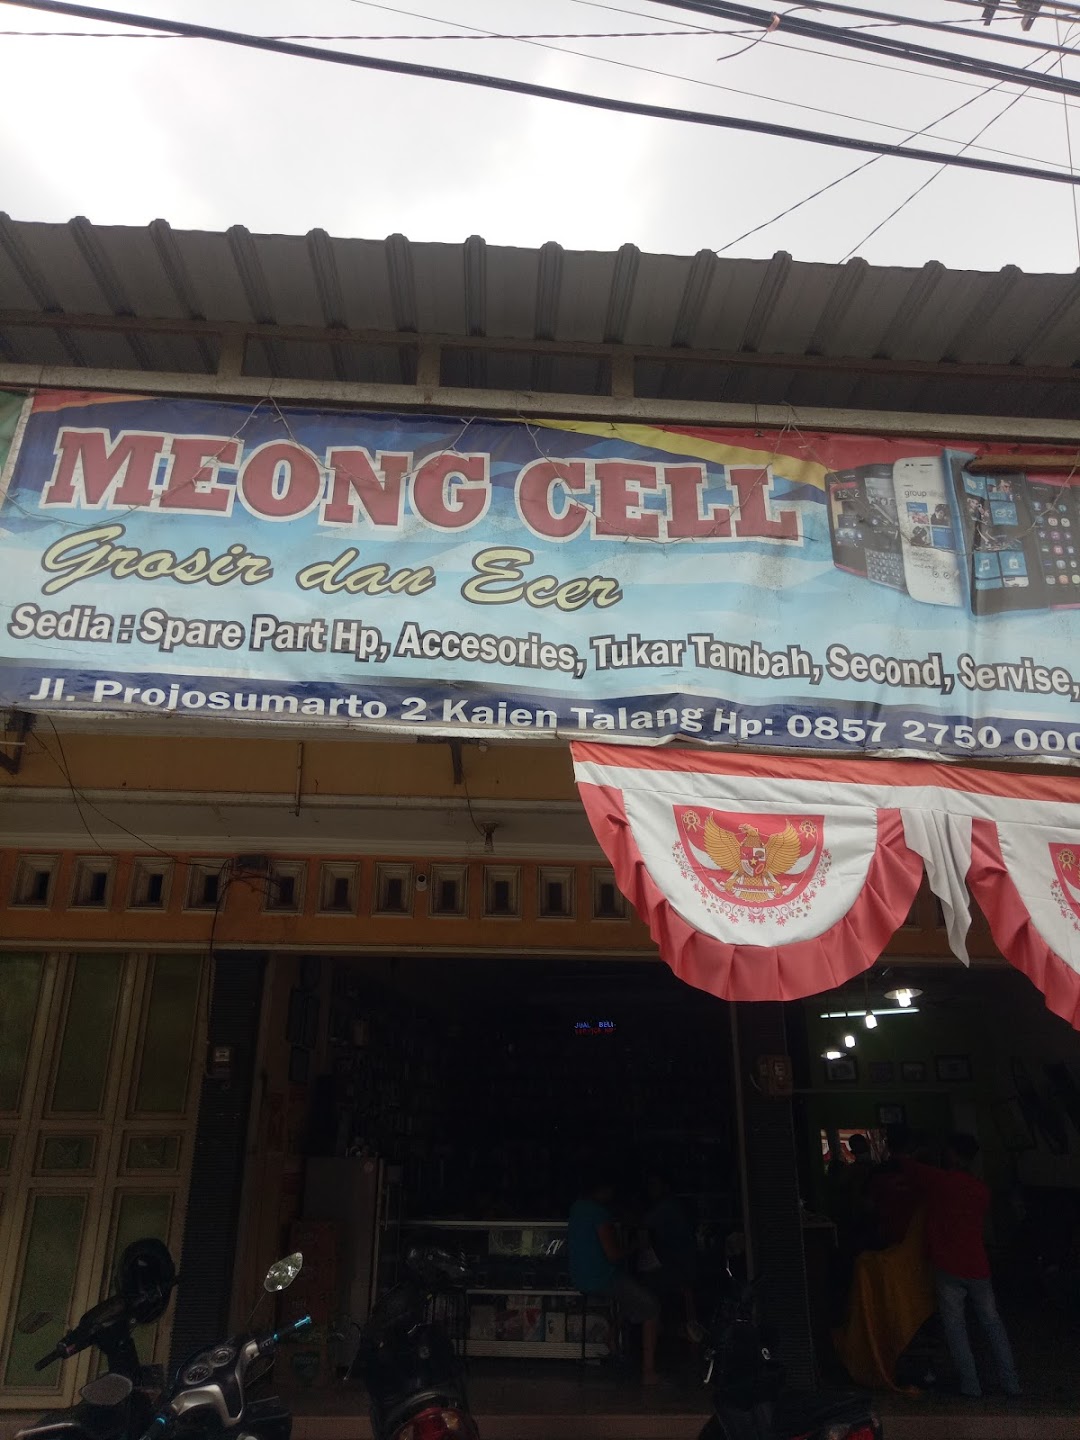 Meong Cellular